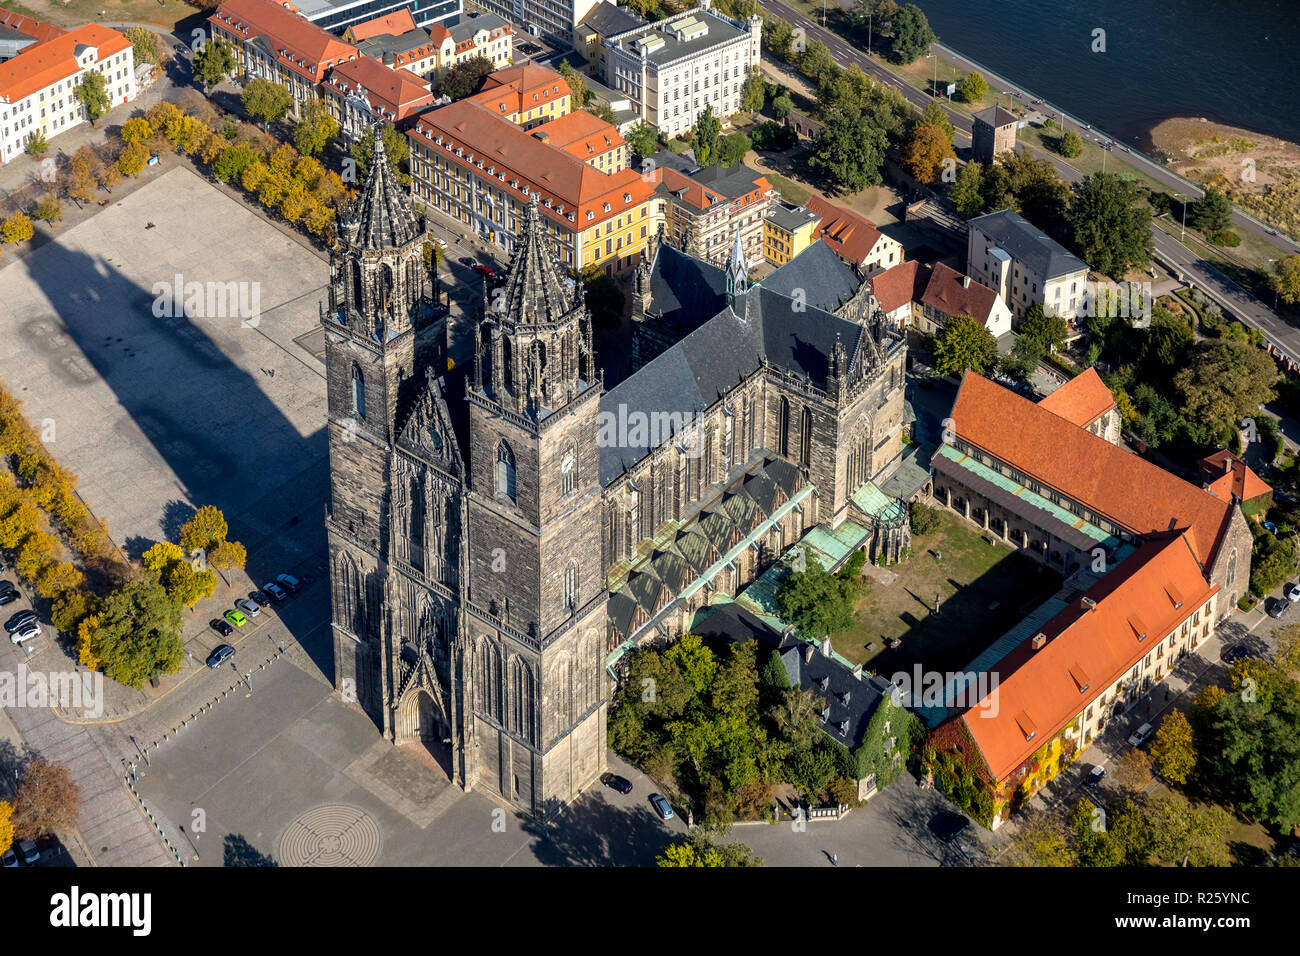 Vue aérienne, la cathédrale de Magdebourg, Place de la cathédrale, de la vieille ville de Magdebourg, Saxe-Anhalt, Allemagne Banque D'Images